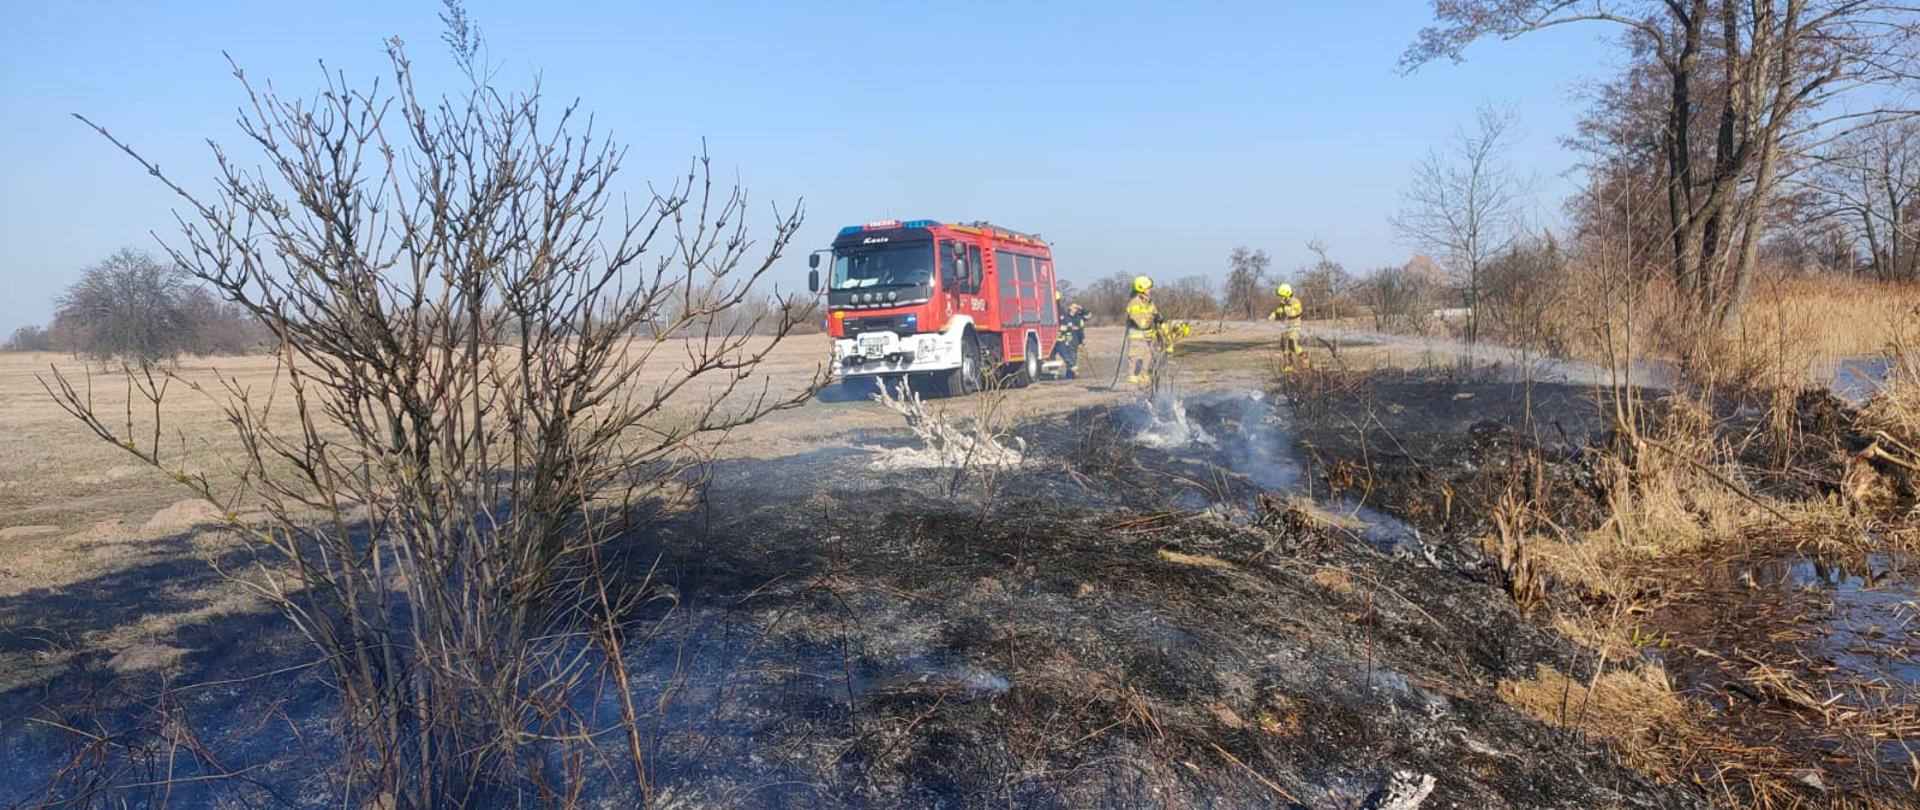 Samochód gaśniczy z dwoma strażakami którzy gaszą palącą się słucha trawę w tle krzewy i drzewa